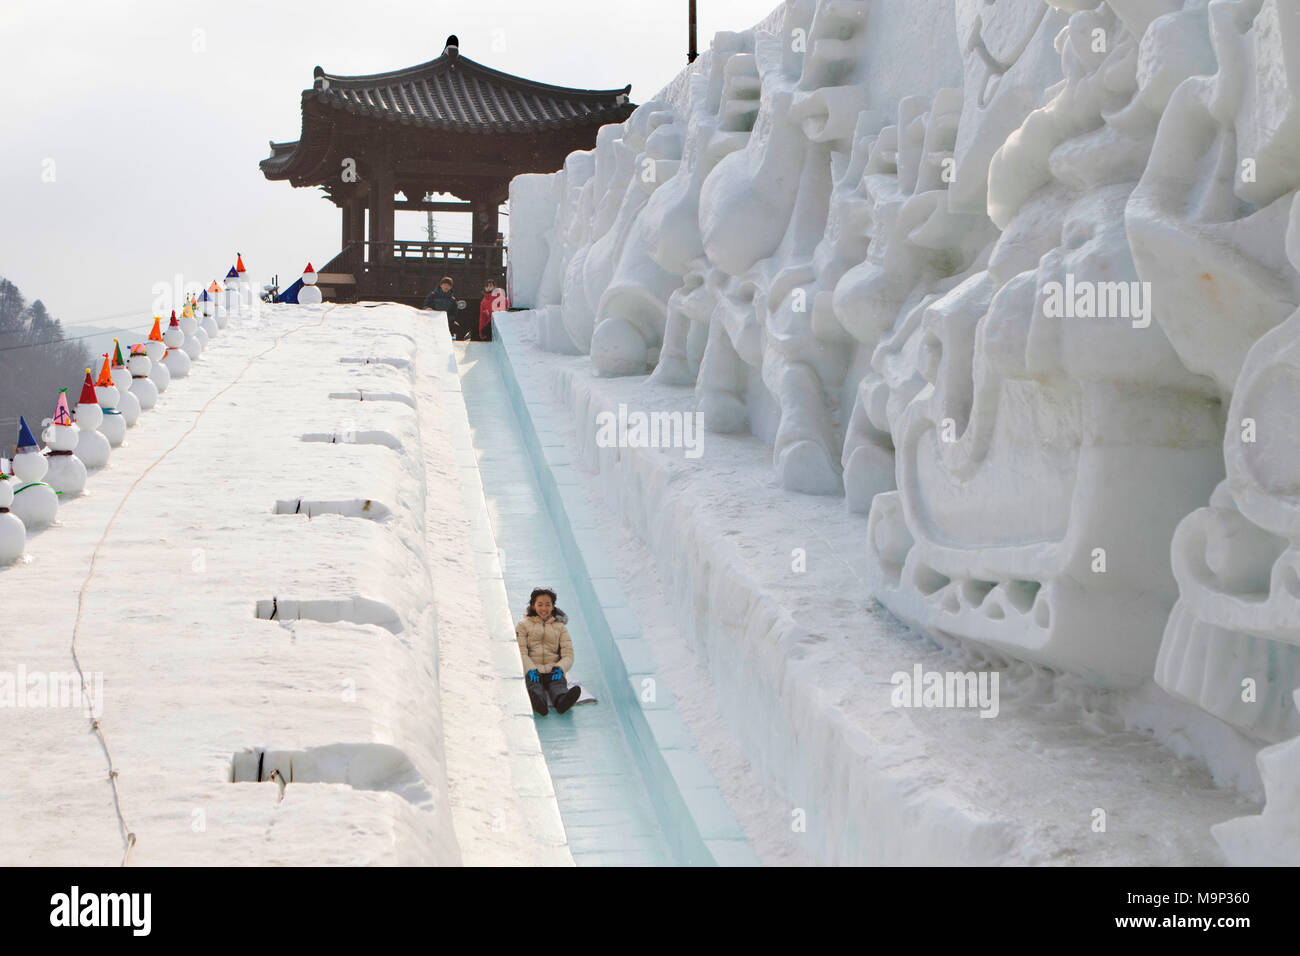 Una mujer asiática es divertirse tirarse en trineo por una empinada ladera de hielo. Festival de hielo Sancheoneo Hwacheon. Gangwon-do, Corea del Sur. El Festival de hielo Sancheoneo Hwacheon es una tradición para el pueblo coreano. En enero de cada año las multitudes se reúnen en el río congelado para celebrar el frío y la nieve del invierno. Su principal atractivo es la pesca sobre hielo. Jóvenes y viejos esperar pacientemente a través de un pequeño agujero en el hielo para una trucha a morder. En carpas pueden dejar el pescado a la parrilla después de que se comen. Entre otras actividades están el trineo y patinaje sobre hielo. La cercana región Pyeongchang será el anfitrión de los Juegos Olímpicos de Invierno en febrero Foto de stock